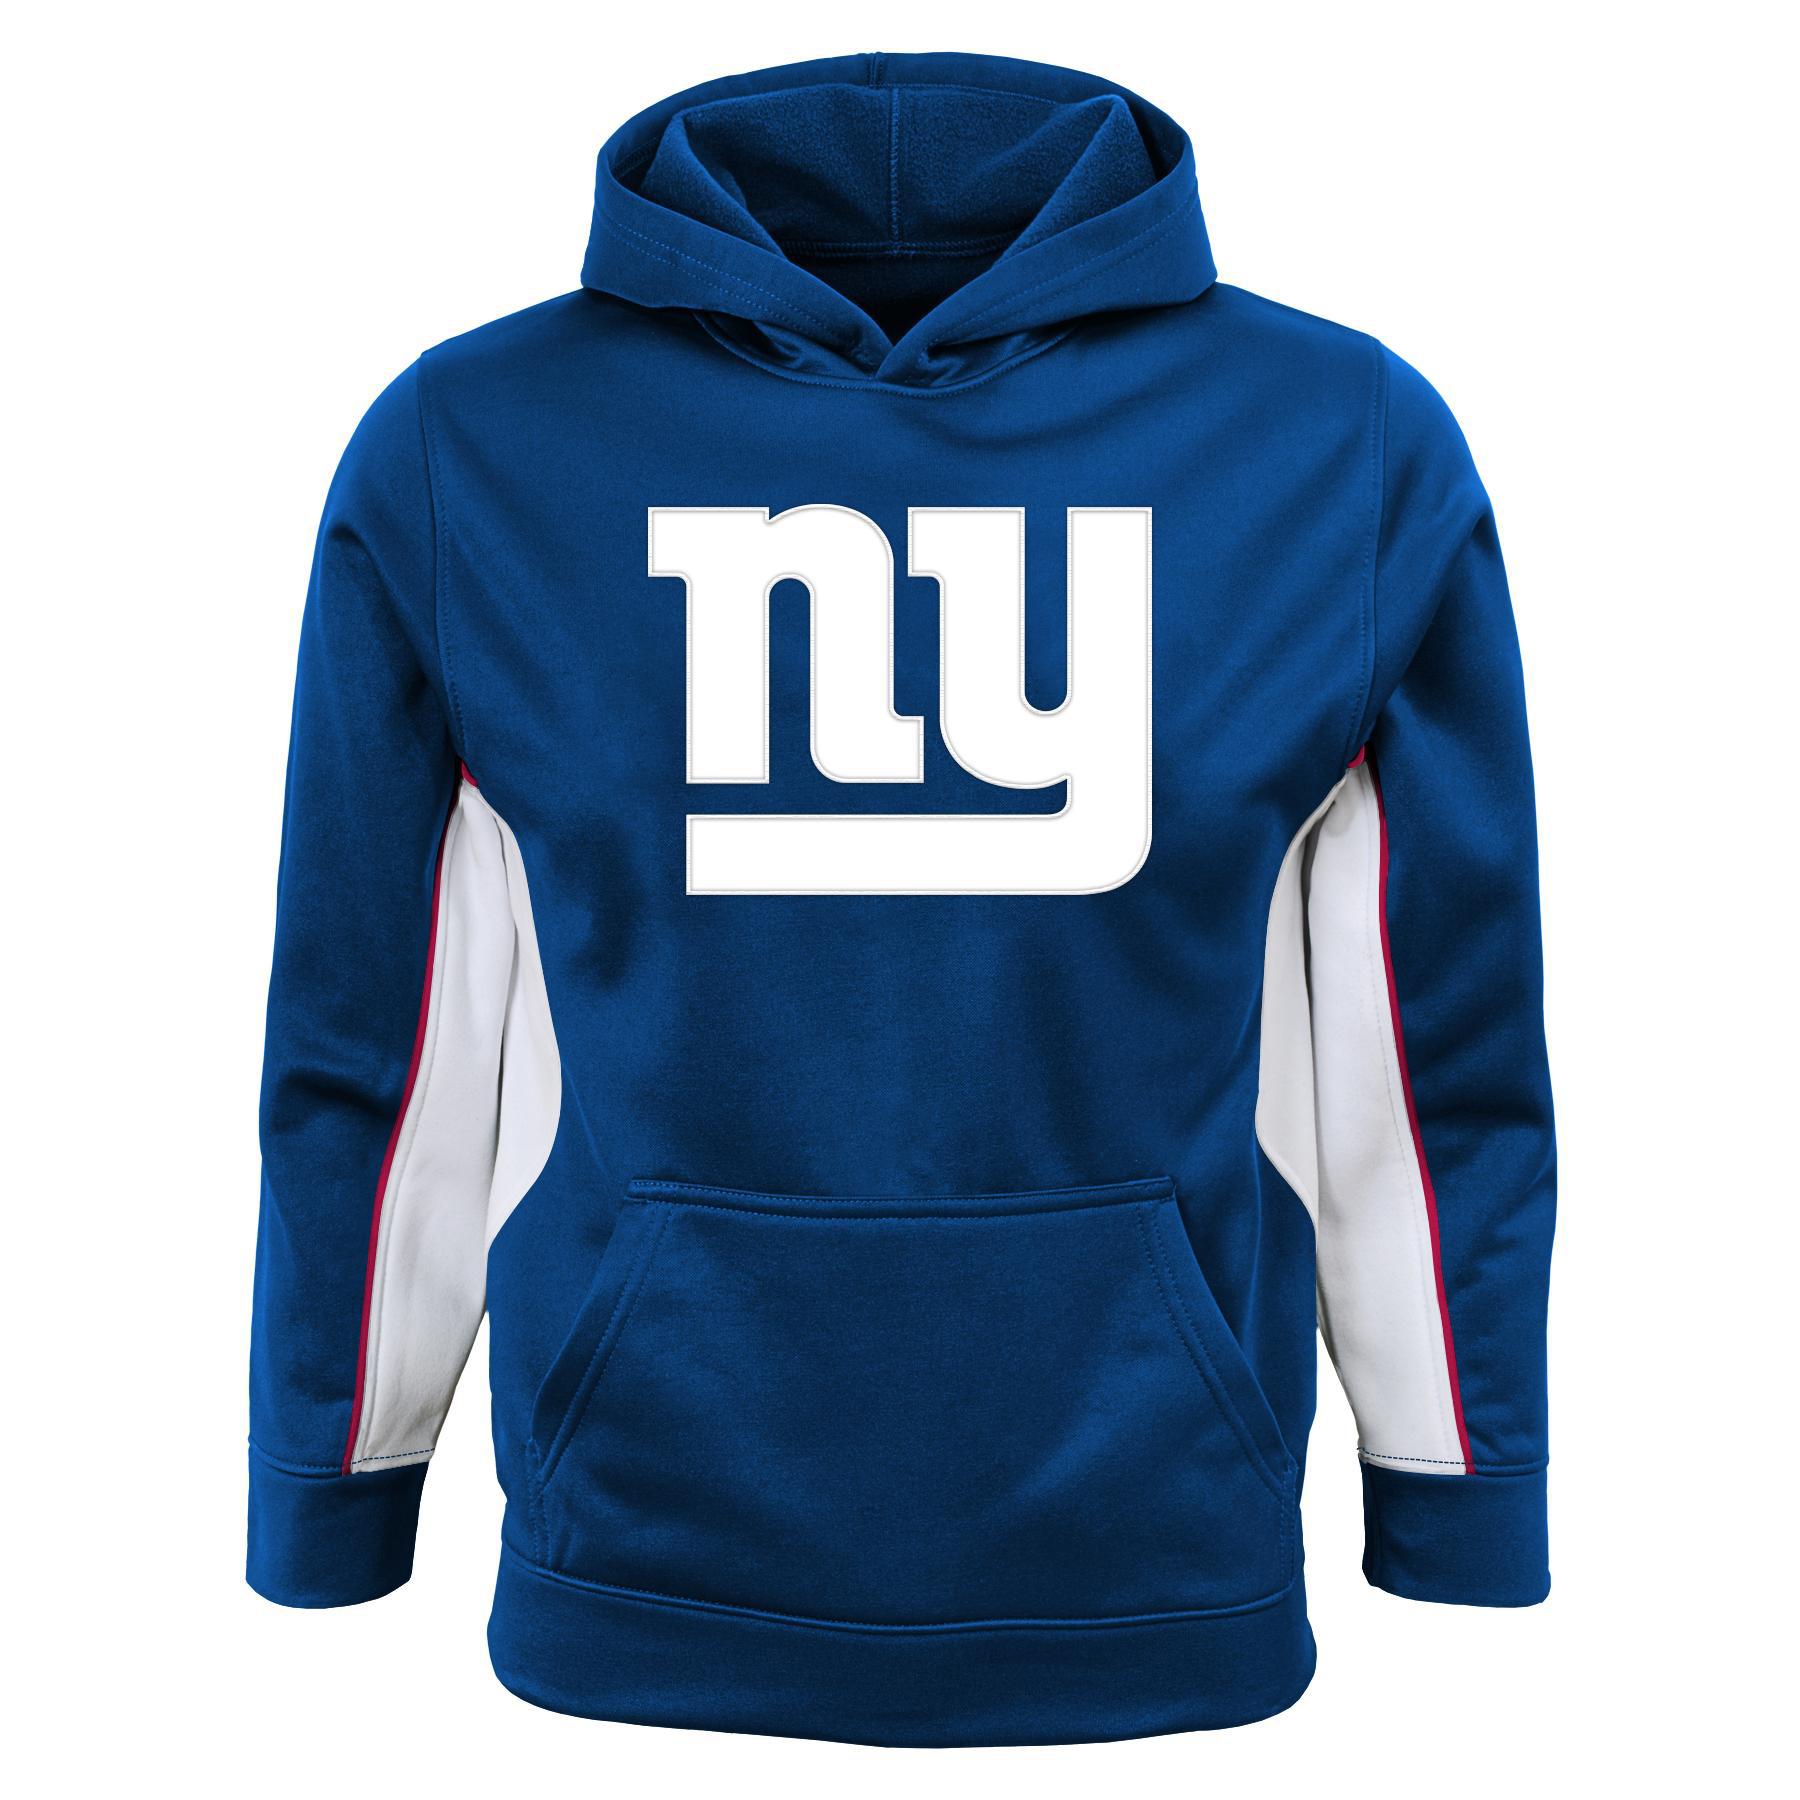 NFL Boys' Hooded Sweatshirt - New York Giants